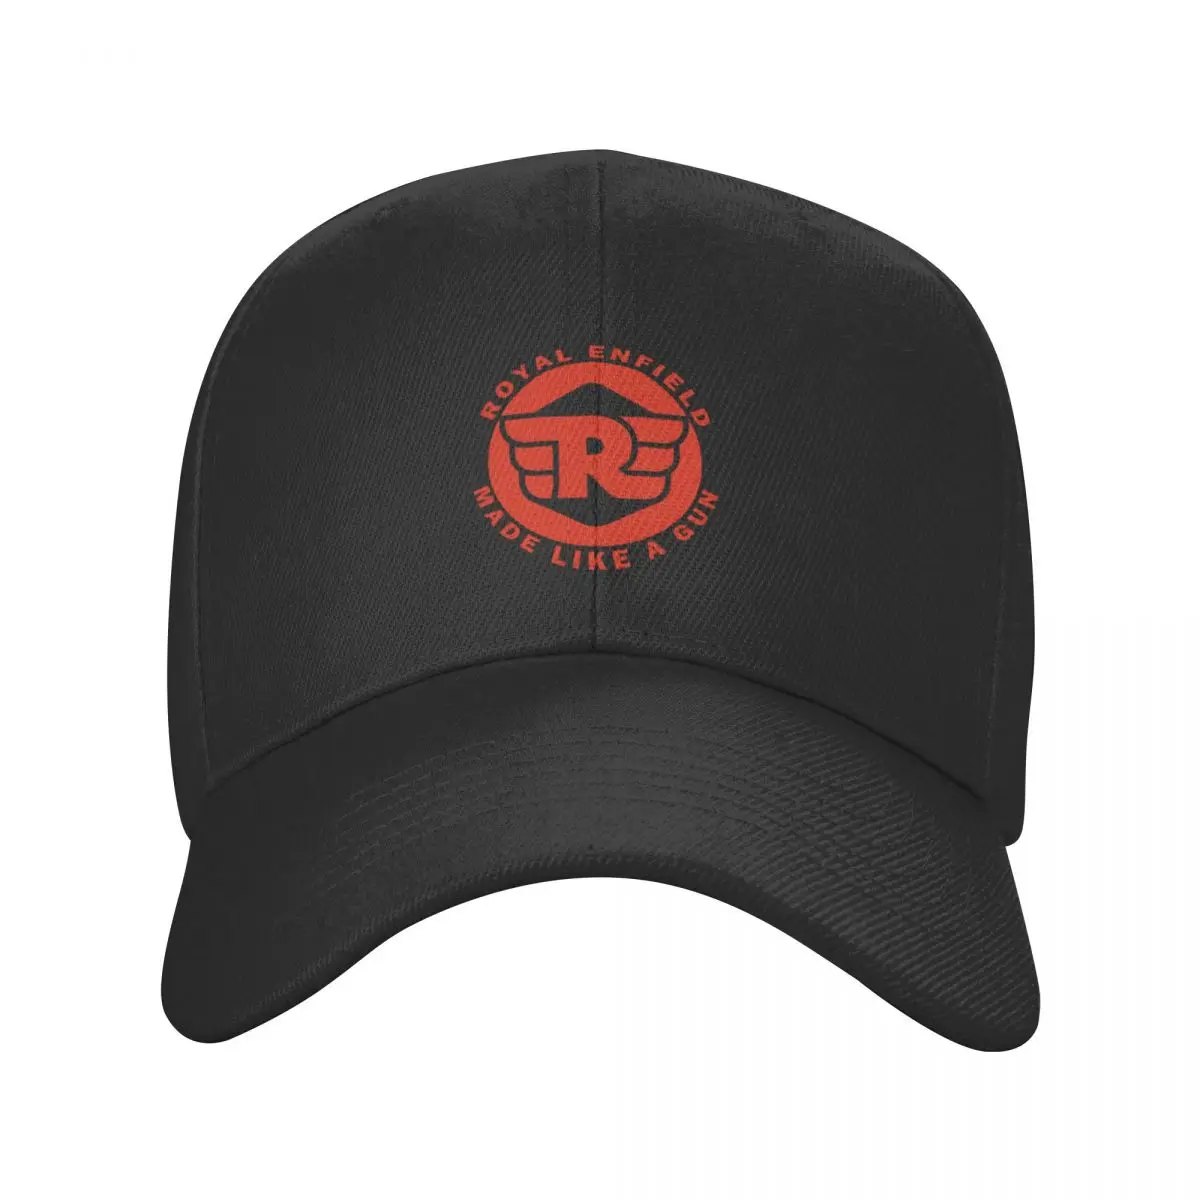 красная эмблема classic royals enfield Cap Бейсбольная кепка с капюшоном уличная мужская кепка женская